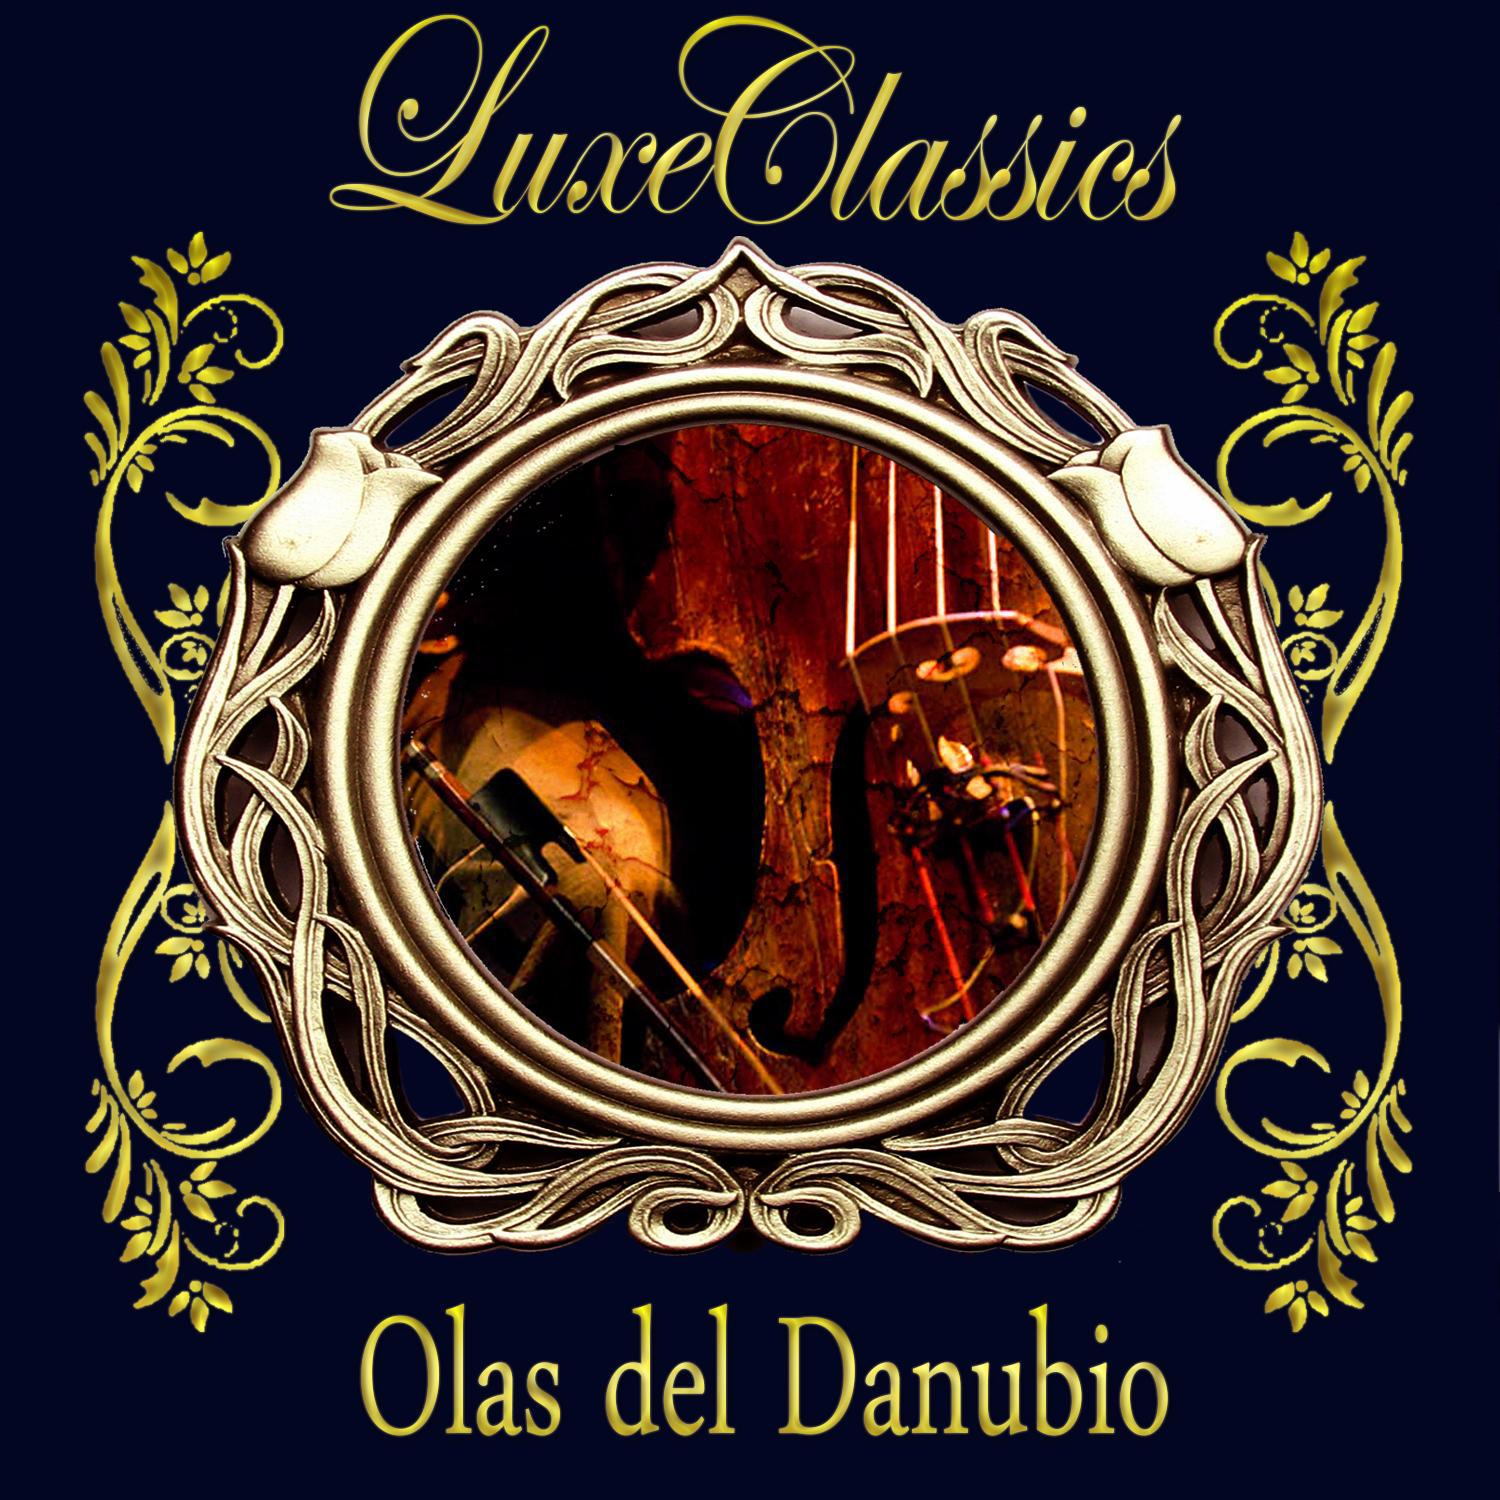 Luxe Classic. Olas del Danubio专辑